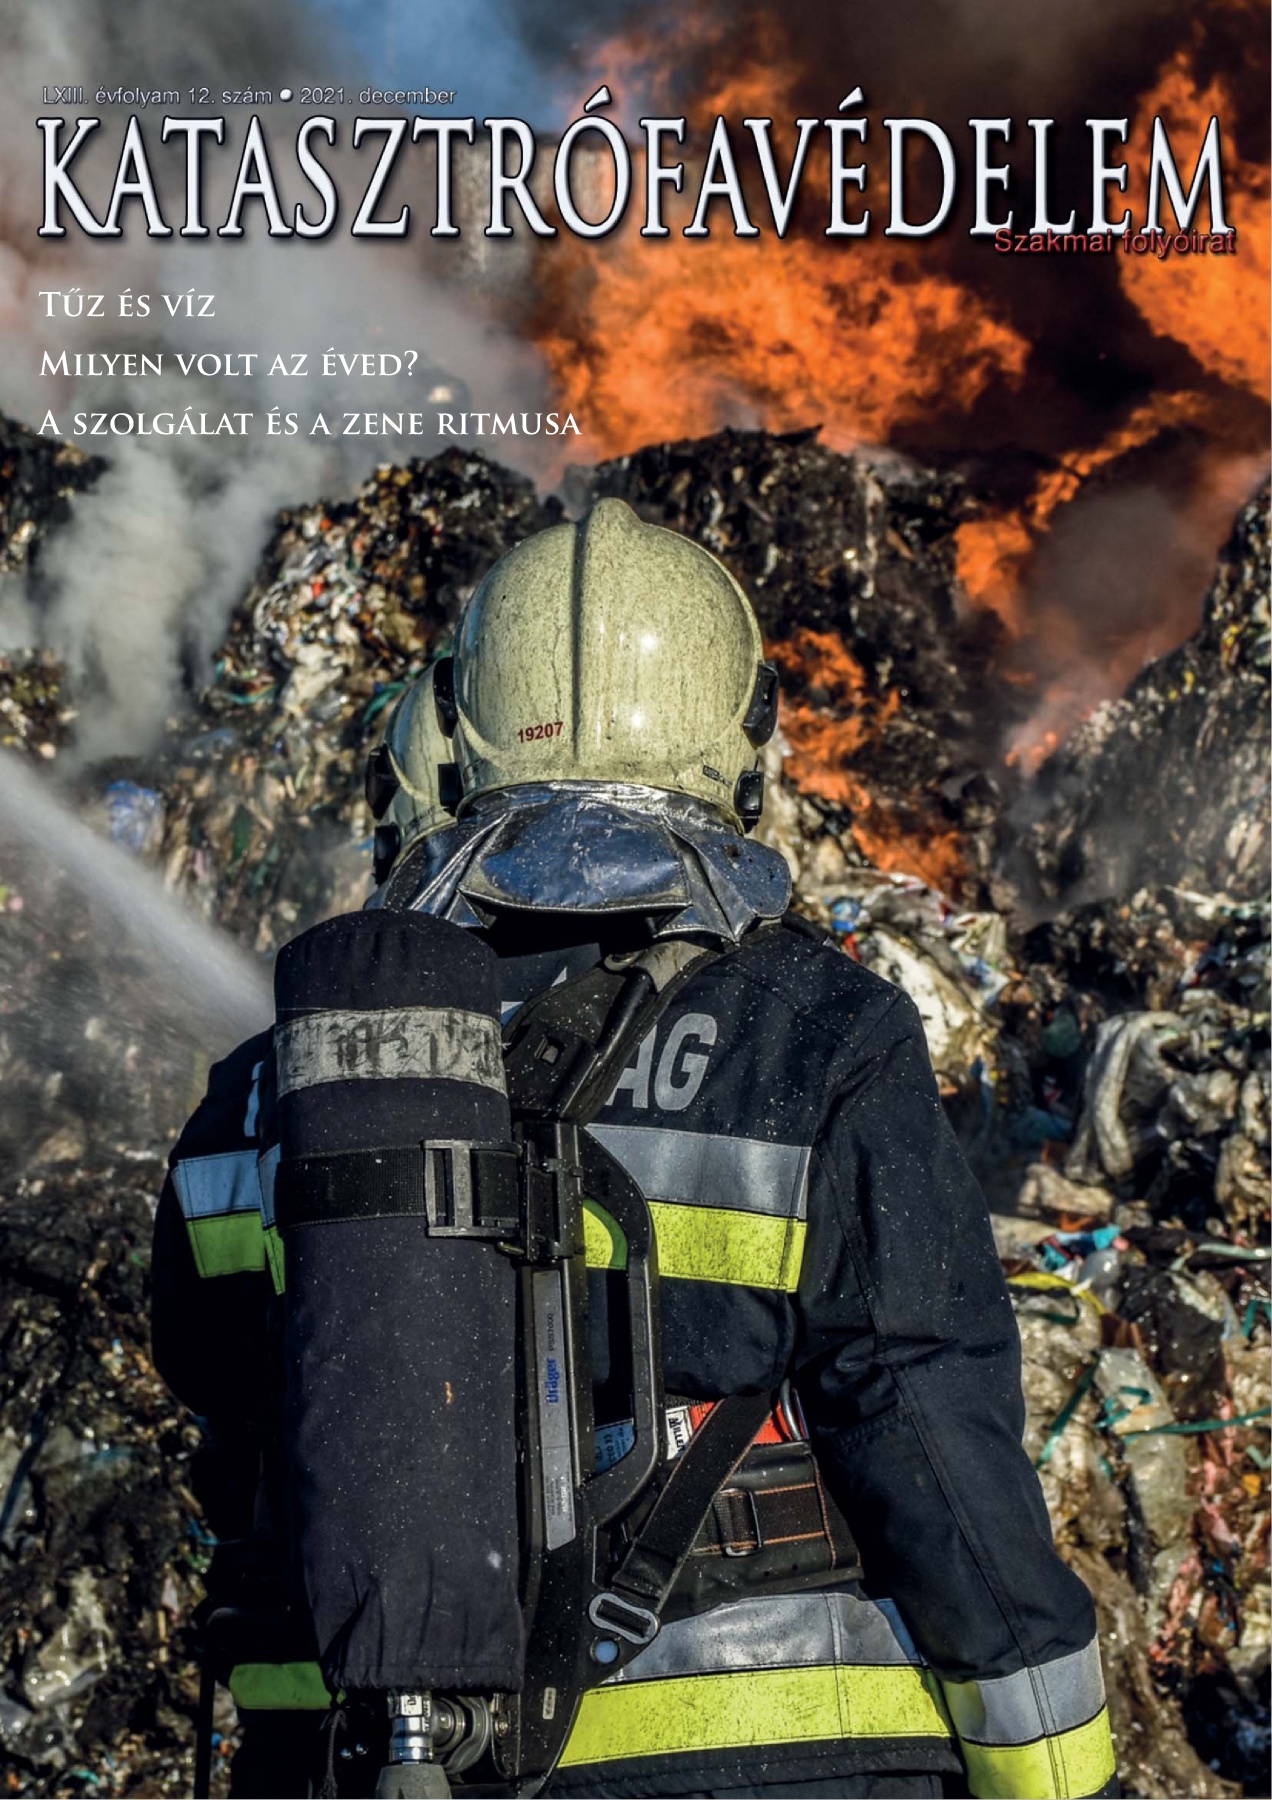 A Katasztrófavédelem magazin LXIII. évfolyam 12. szám megtekintése